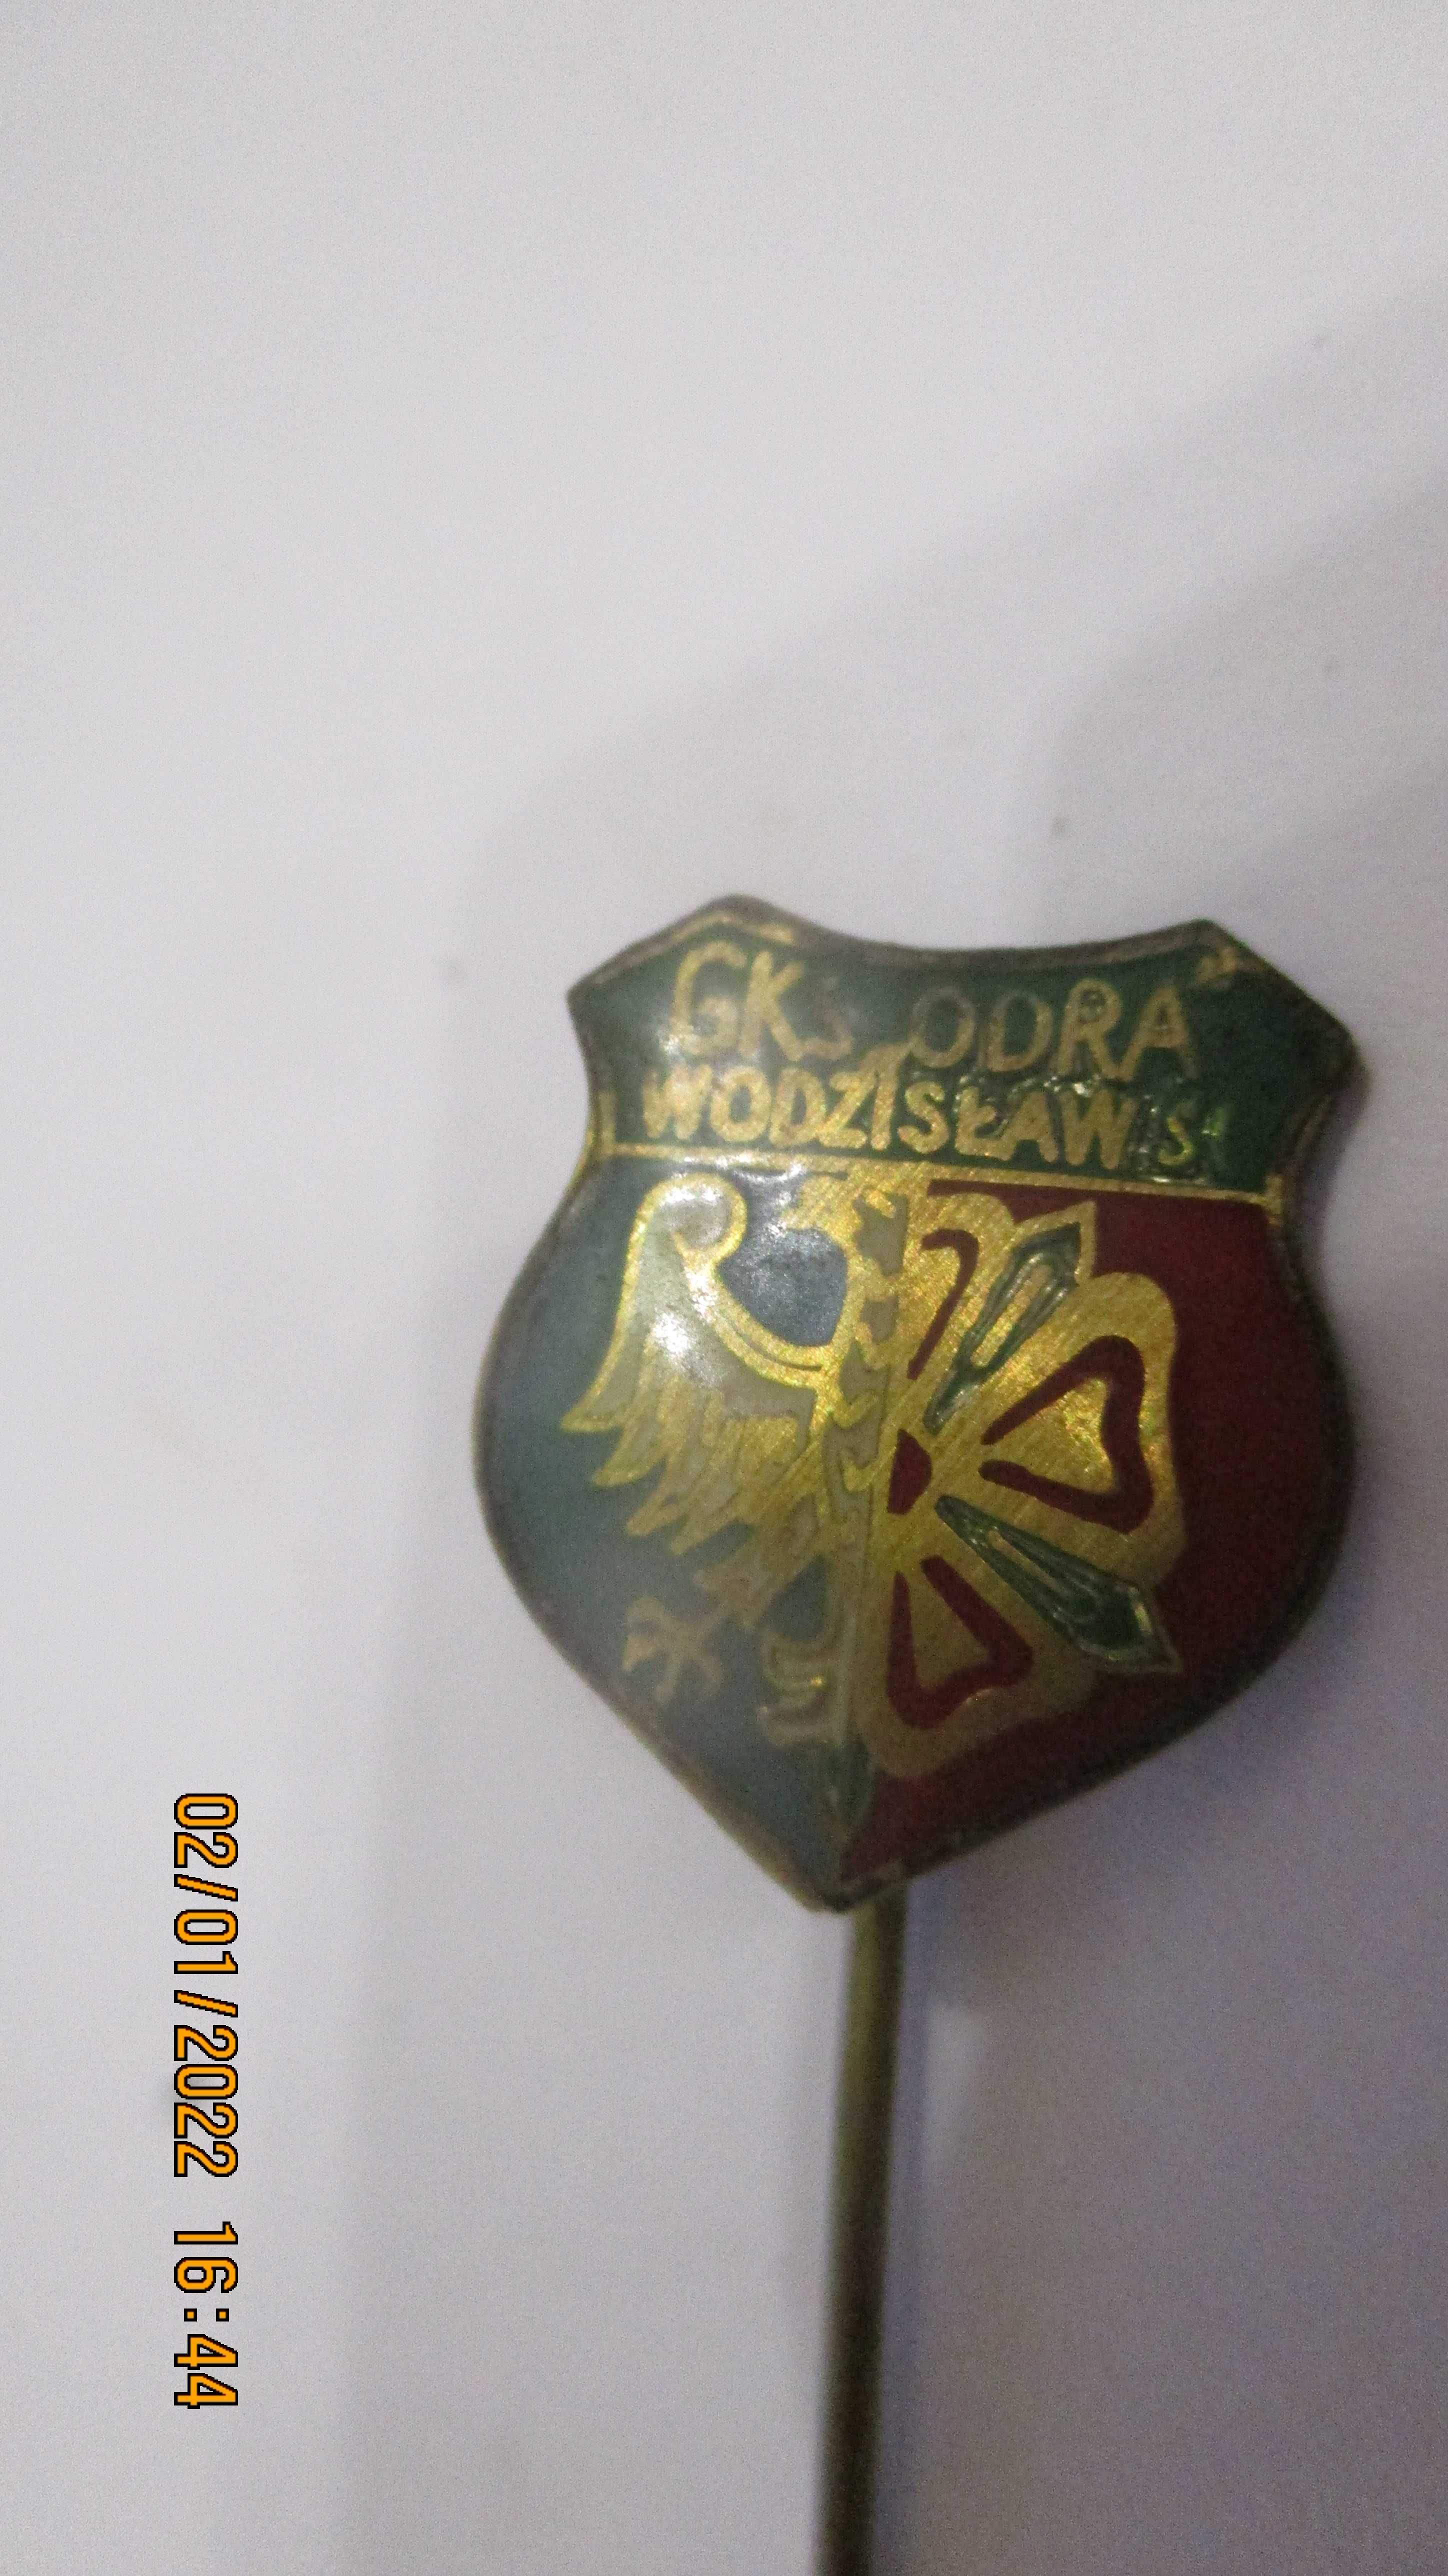 przypinka,zapinka,odznaka ,pin,GKS Wodzisław Sląski